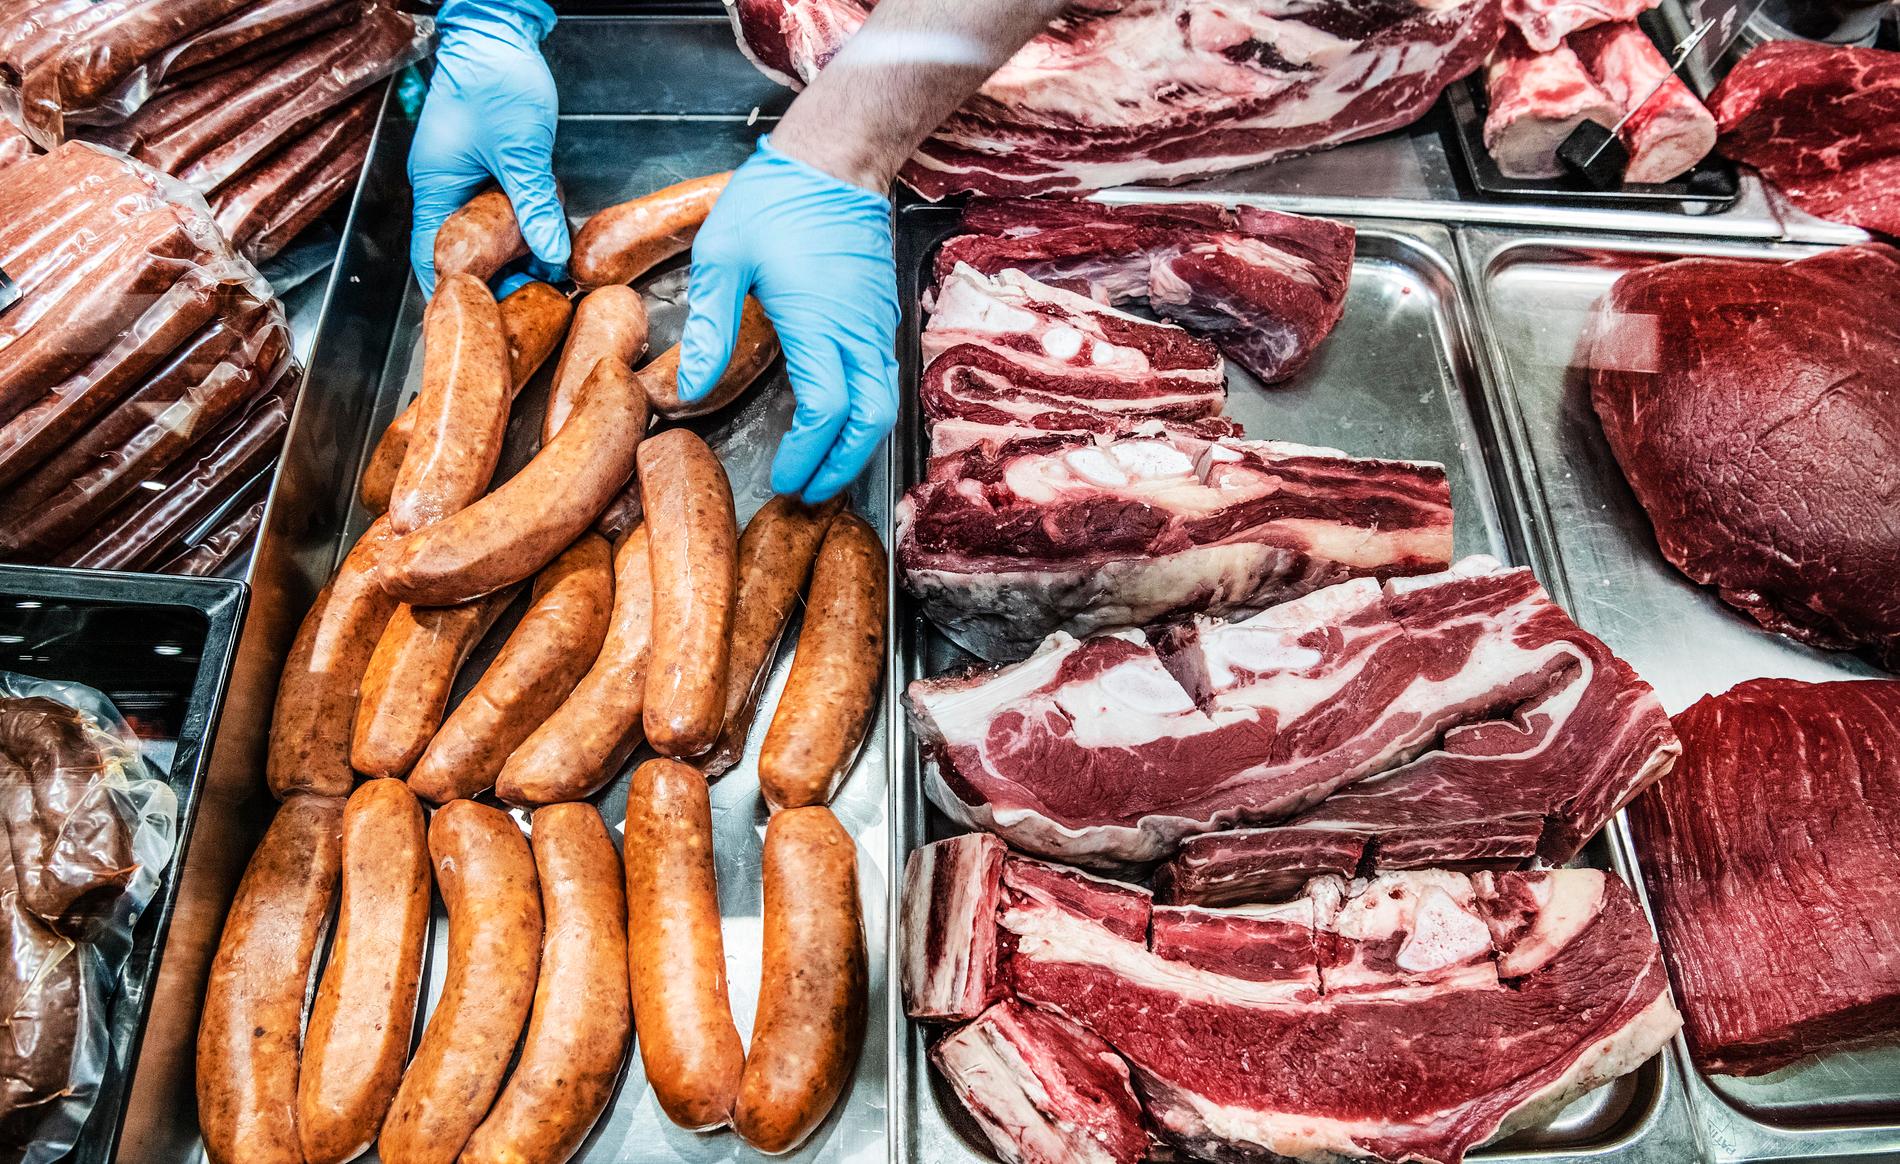 Köttproduktion har en stor miljöpåverkan. Det vill Världsnaturfonden ändra på med sin nya köttguide.